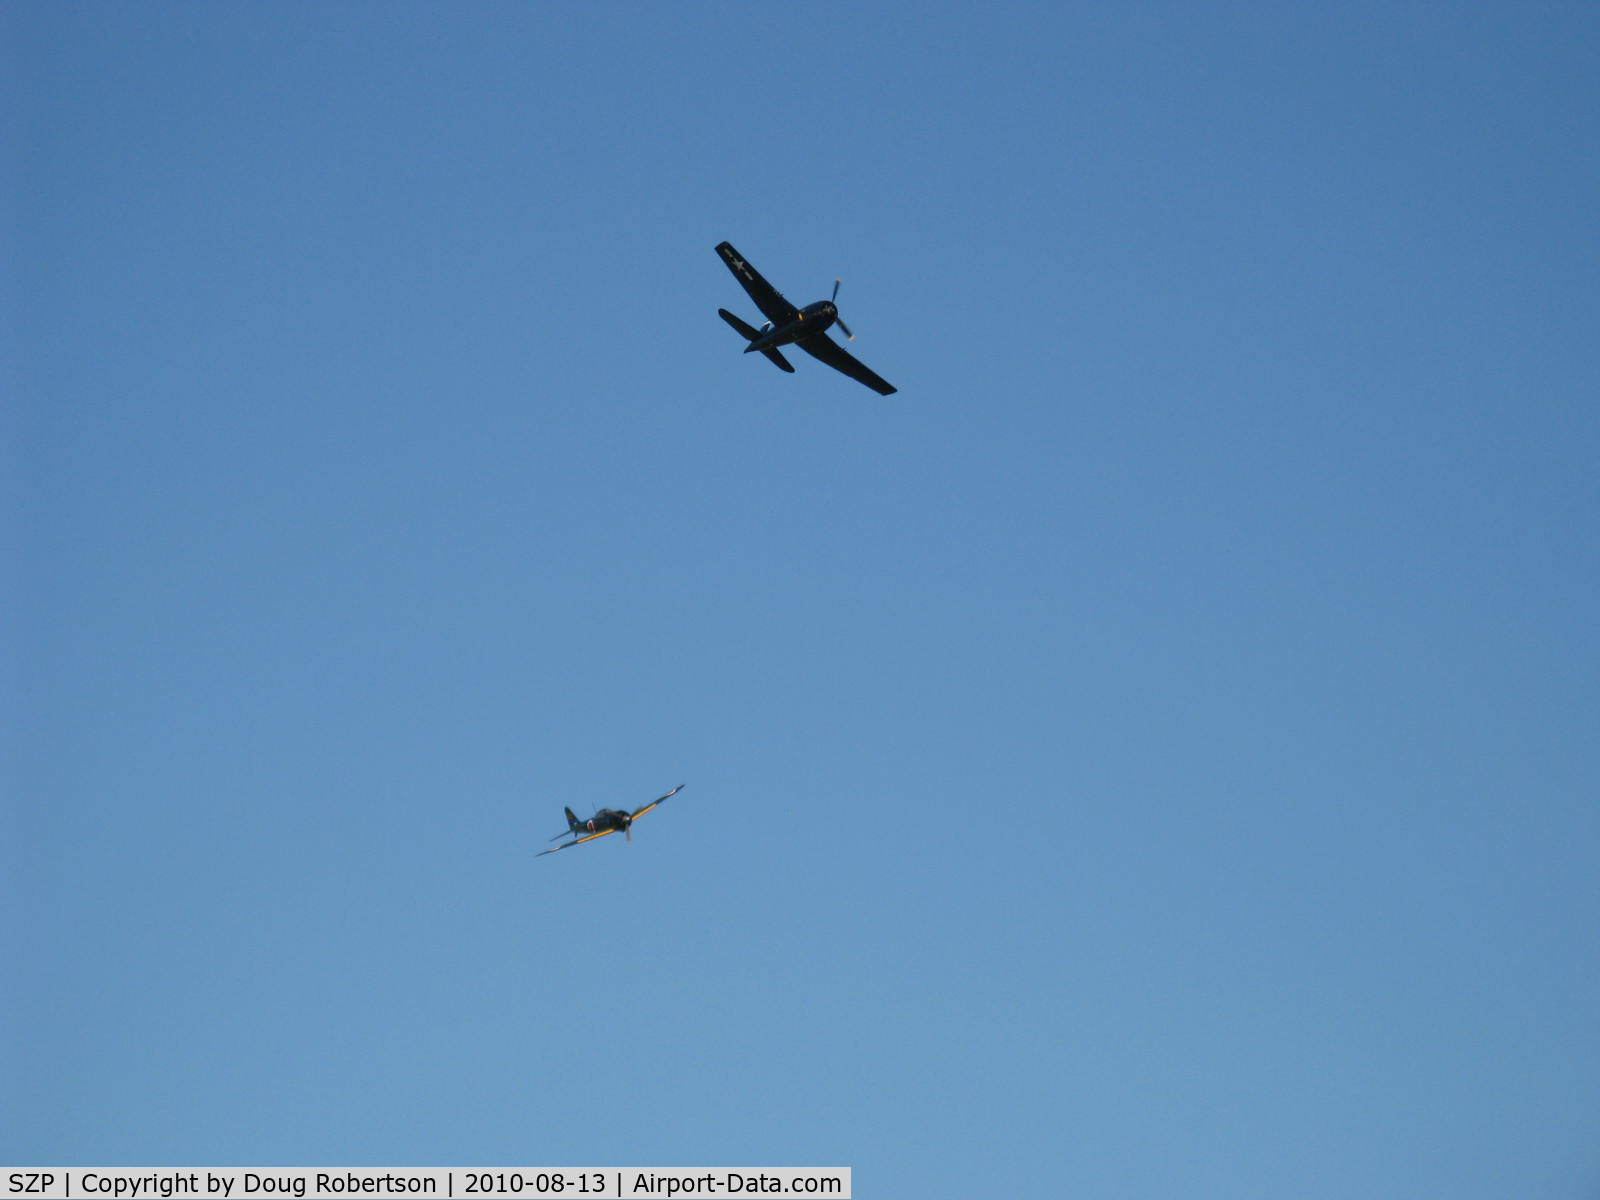 Santa Paula Airport (SZP) - Dogfight airshow practice-N712Z Mitsubishi A6M3 ZERO-SEN (ZEKE) vs. N1078Z S&S Special GRUMMAN F6F-6 HELLCAT 'Minsi III'